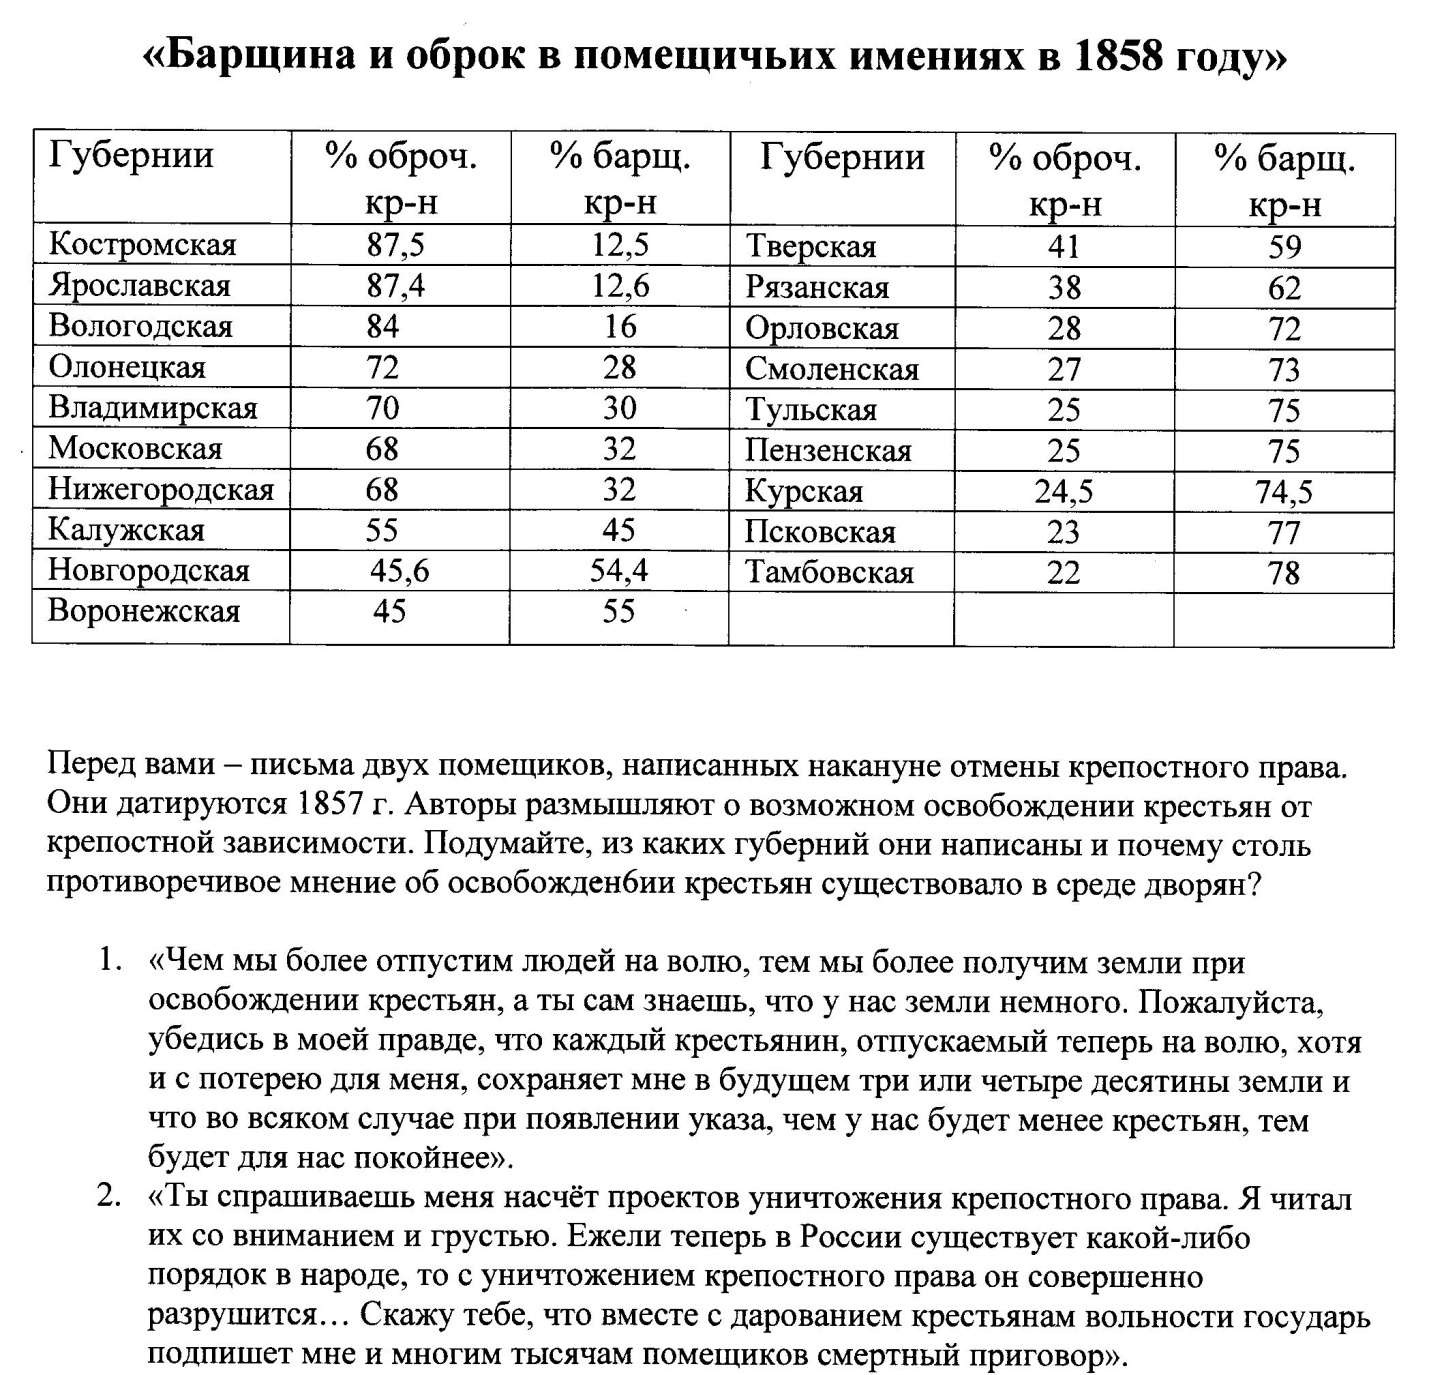 Урок по истории России XIX в. в 8 классе «Подготовка крестьянской реформы 1861 г. в России»